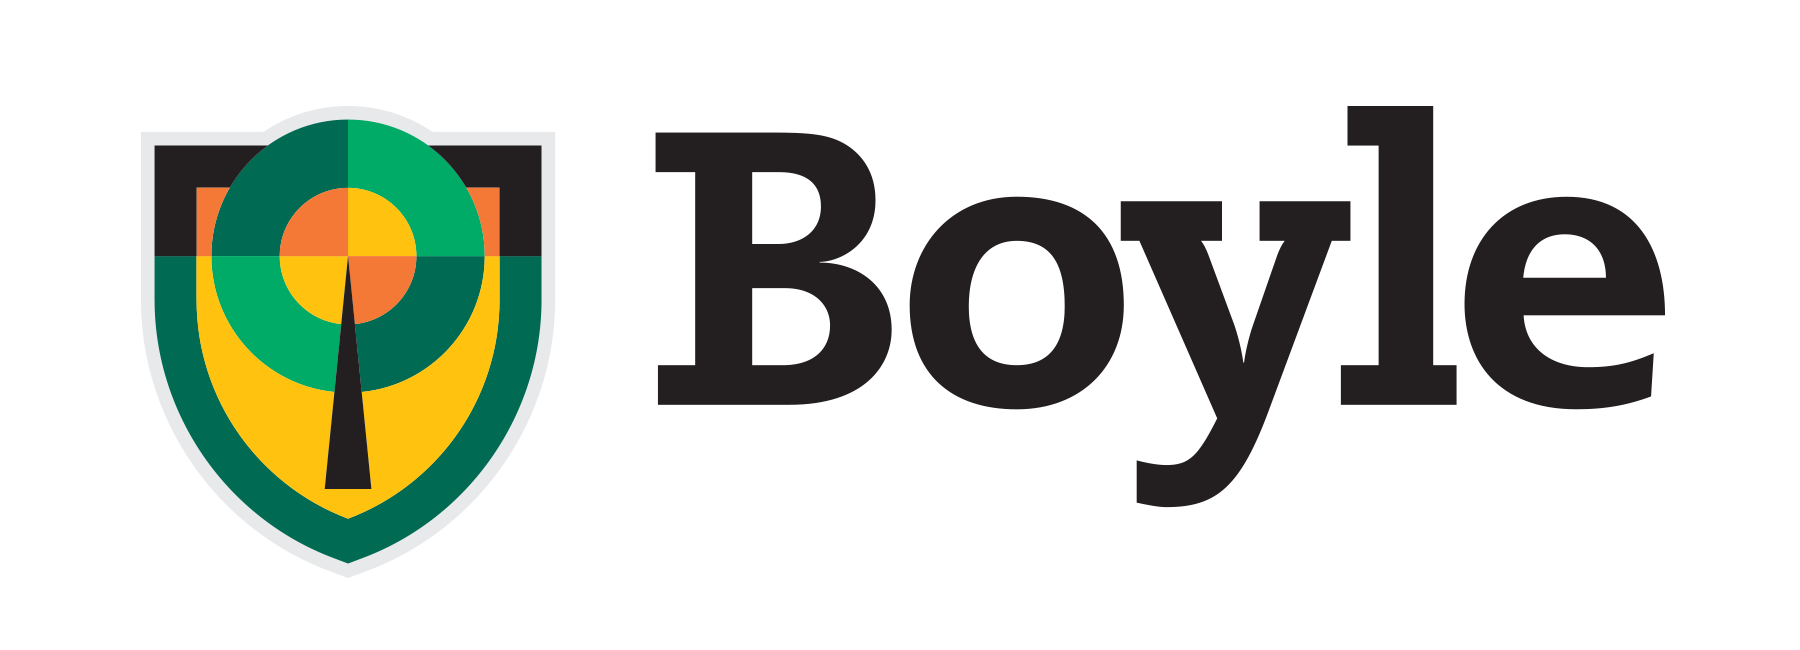 Boyle Construction logo